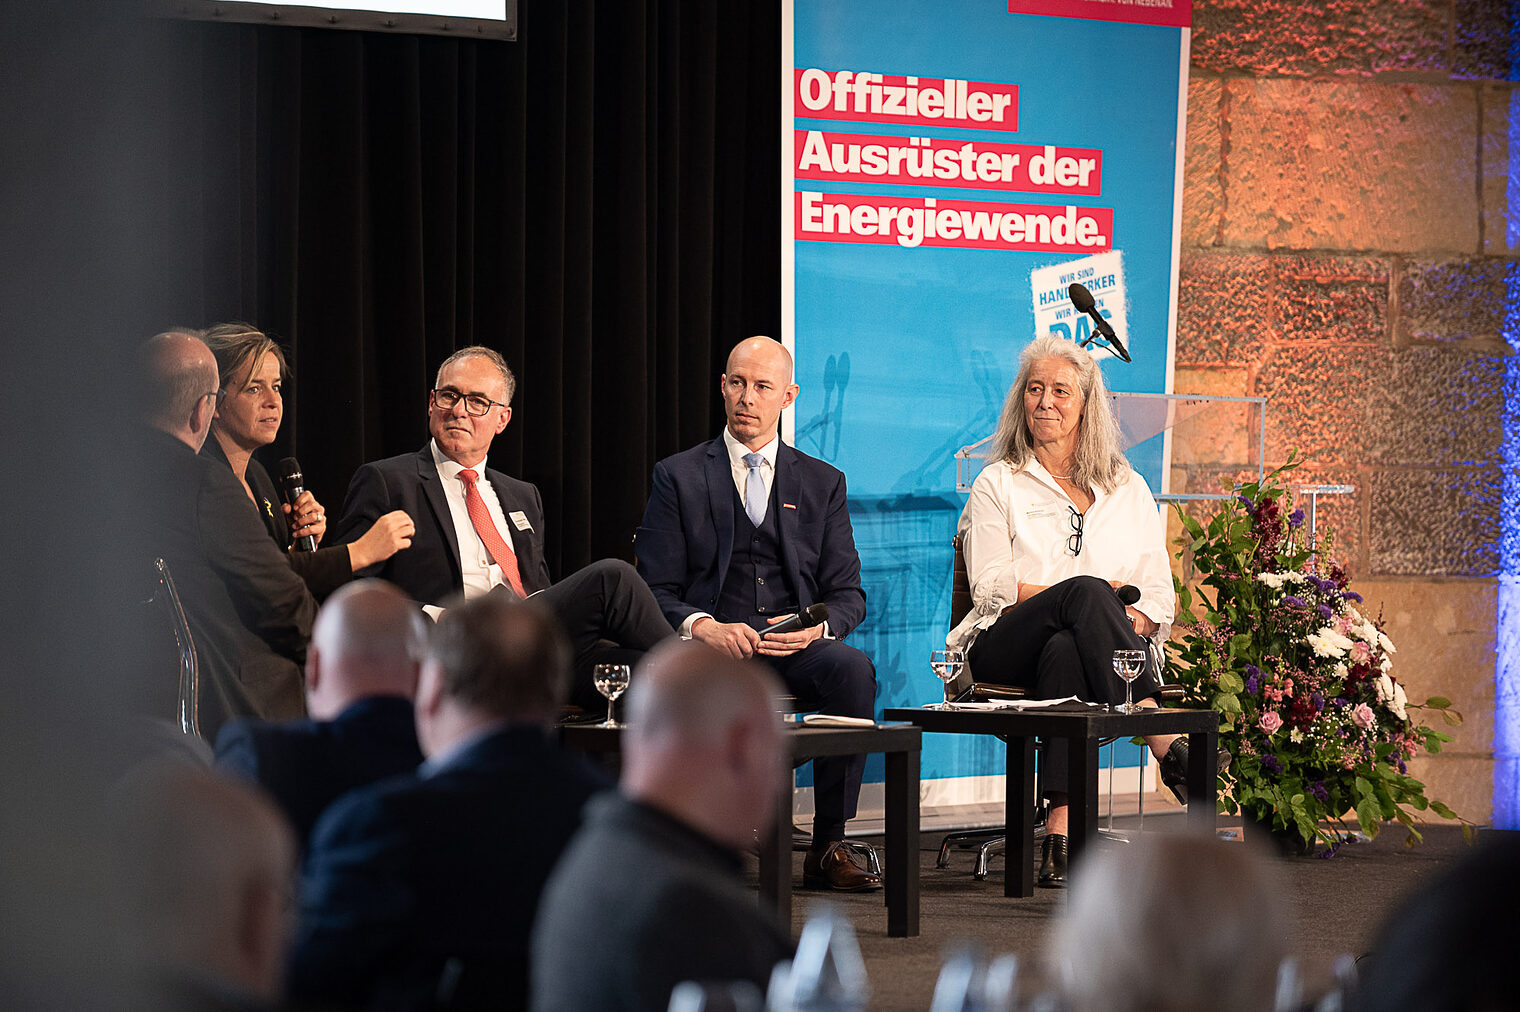 Macht sich stark für Frauen im Handwerk und gesetzliche Schutzleistungen für selbstständige Unternehmerinnen: Nordrhein-Westfalens stellvertretende Ministerpräsidentin Mona Neubaur.